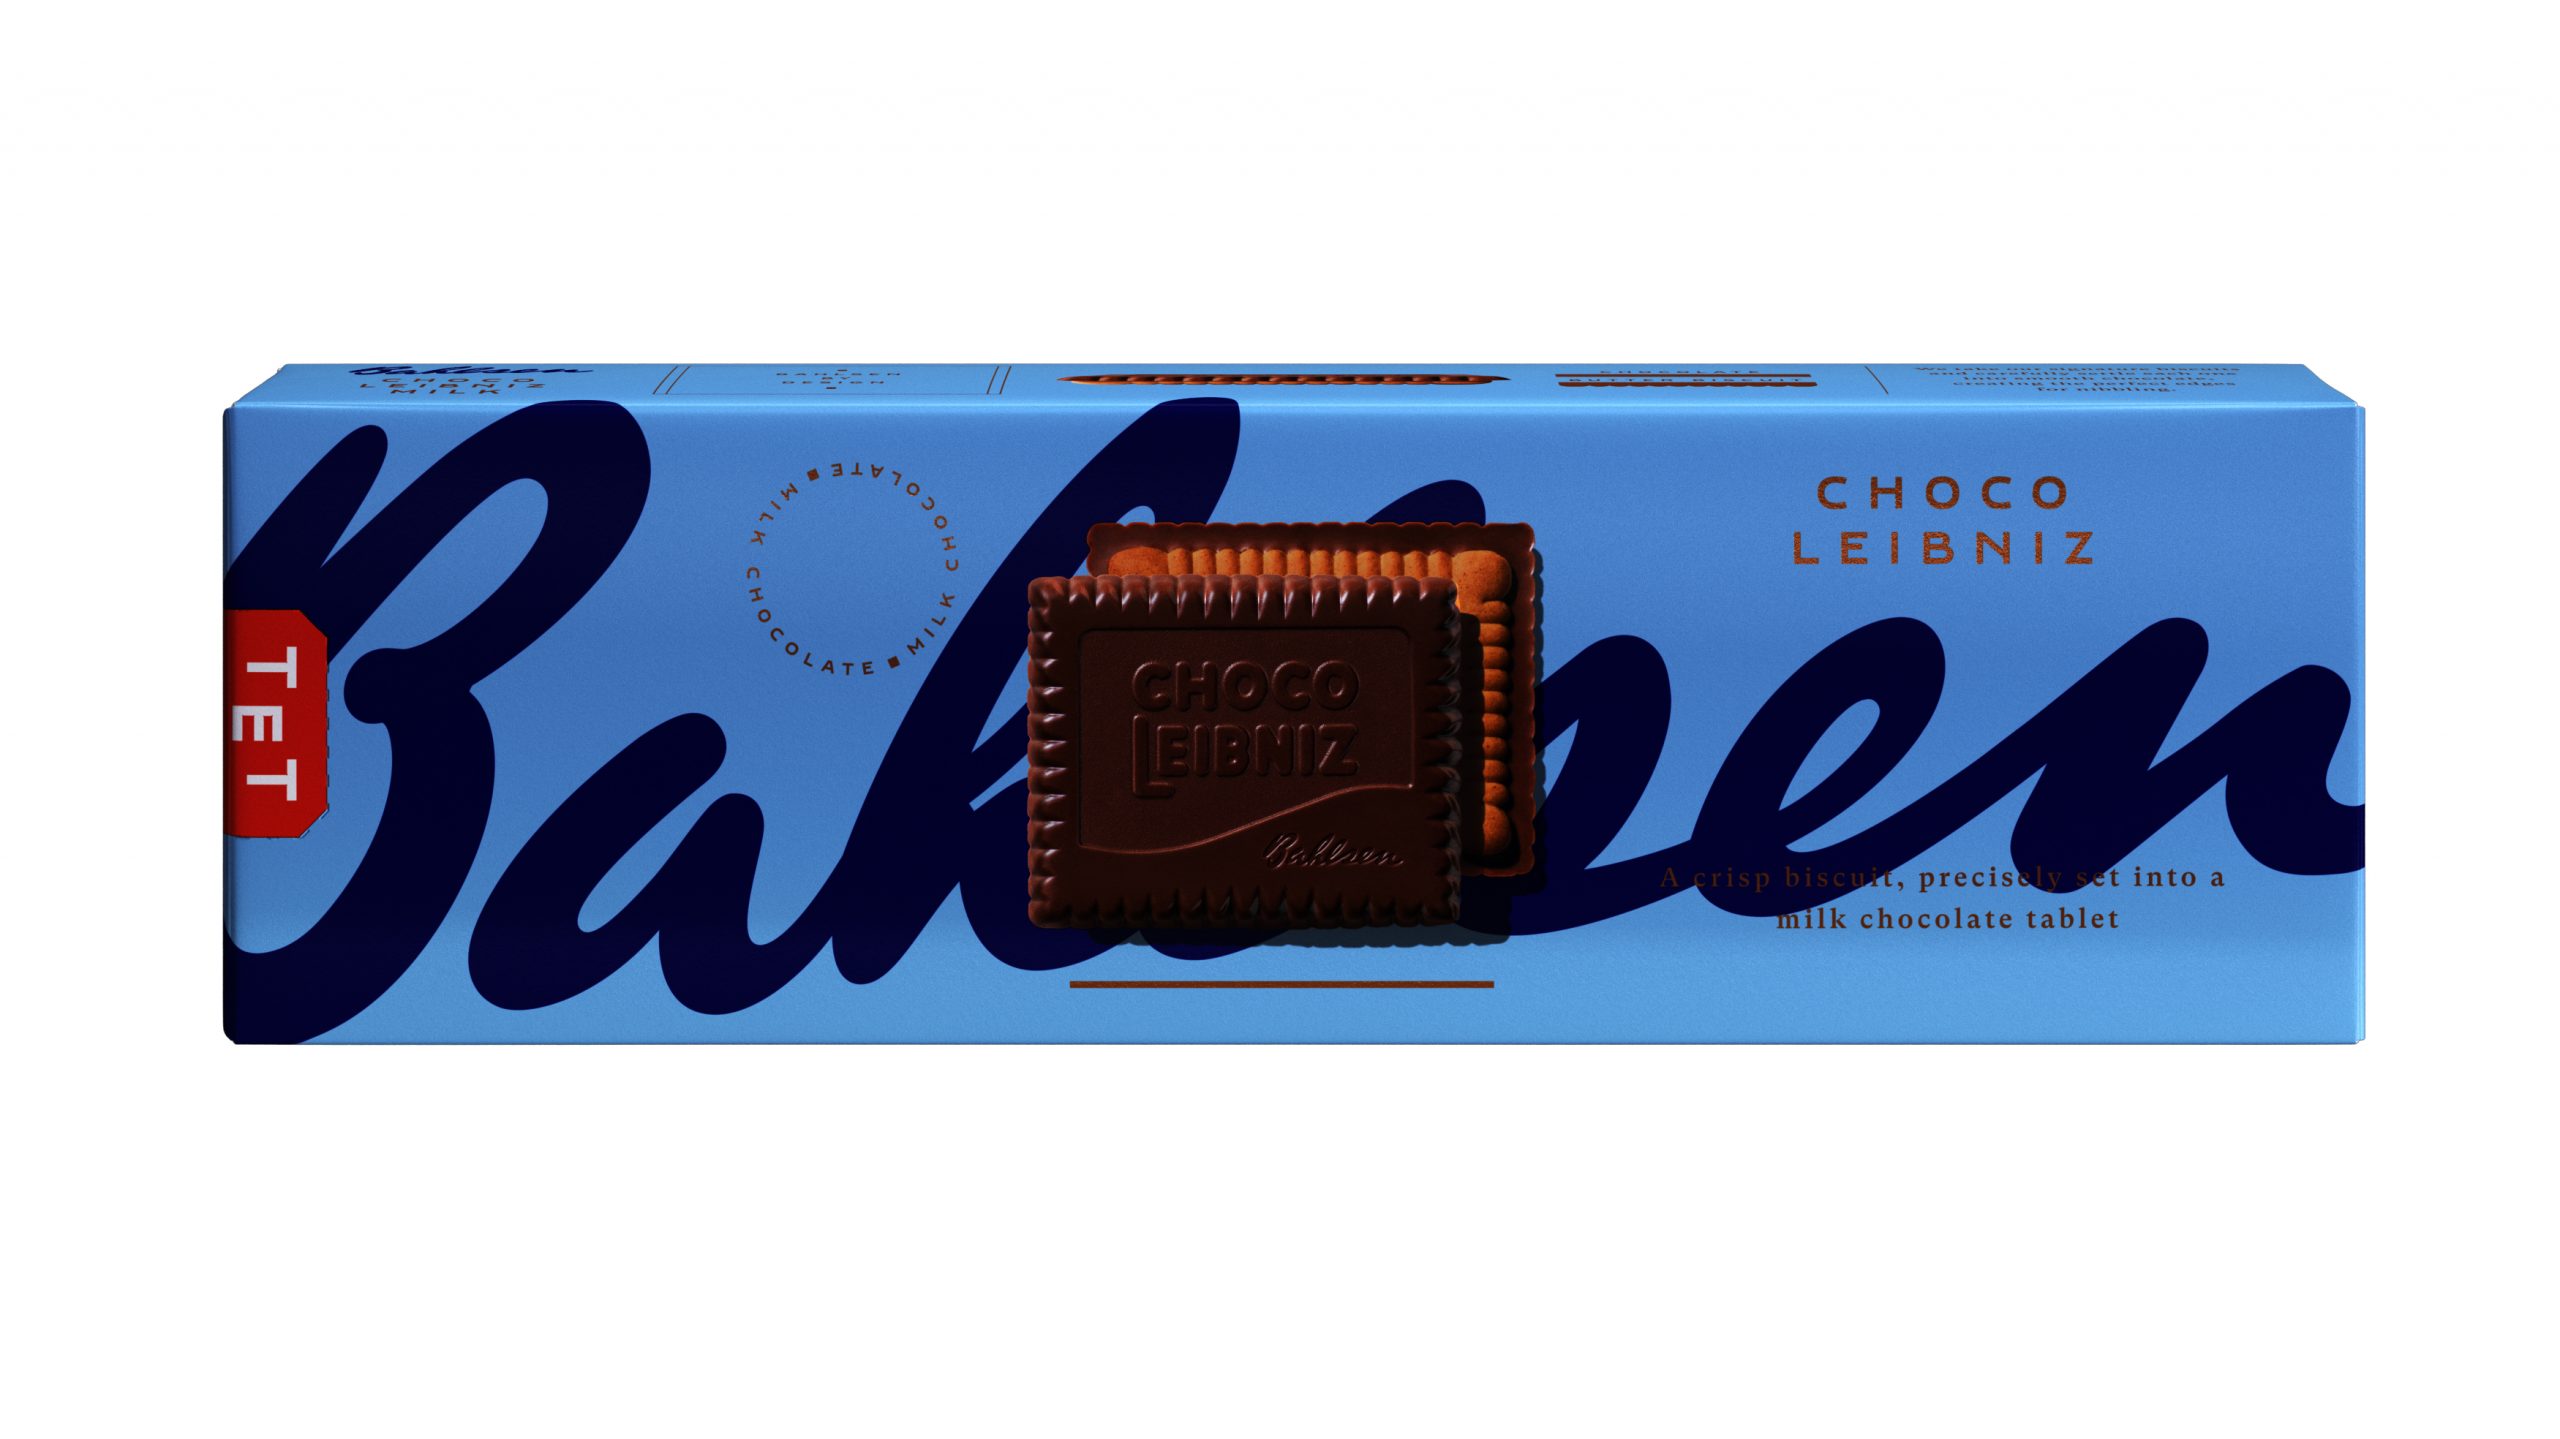 Bahlsen unveils new biscuit branding